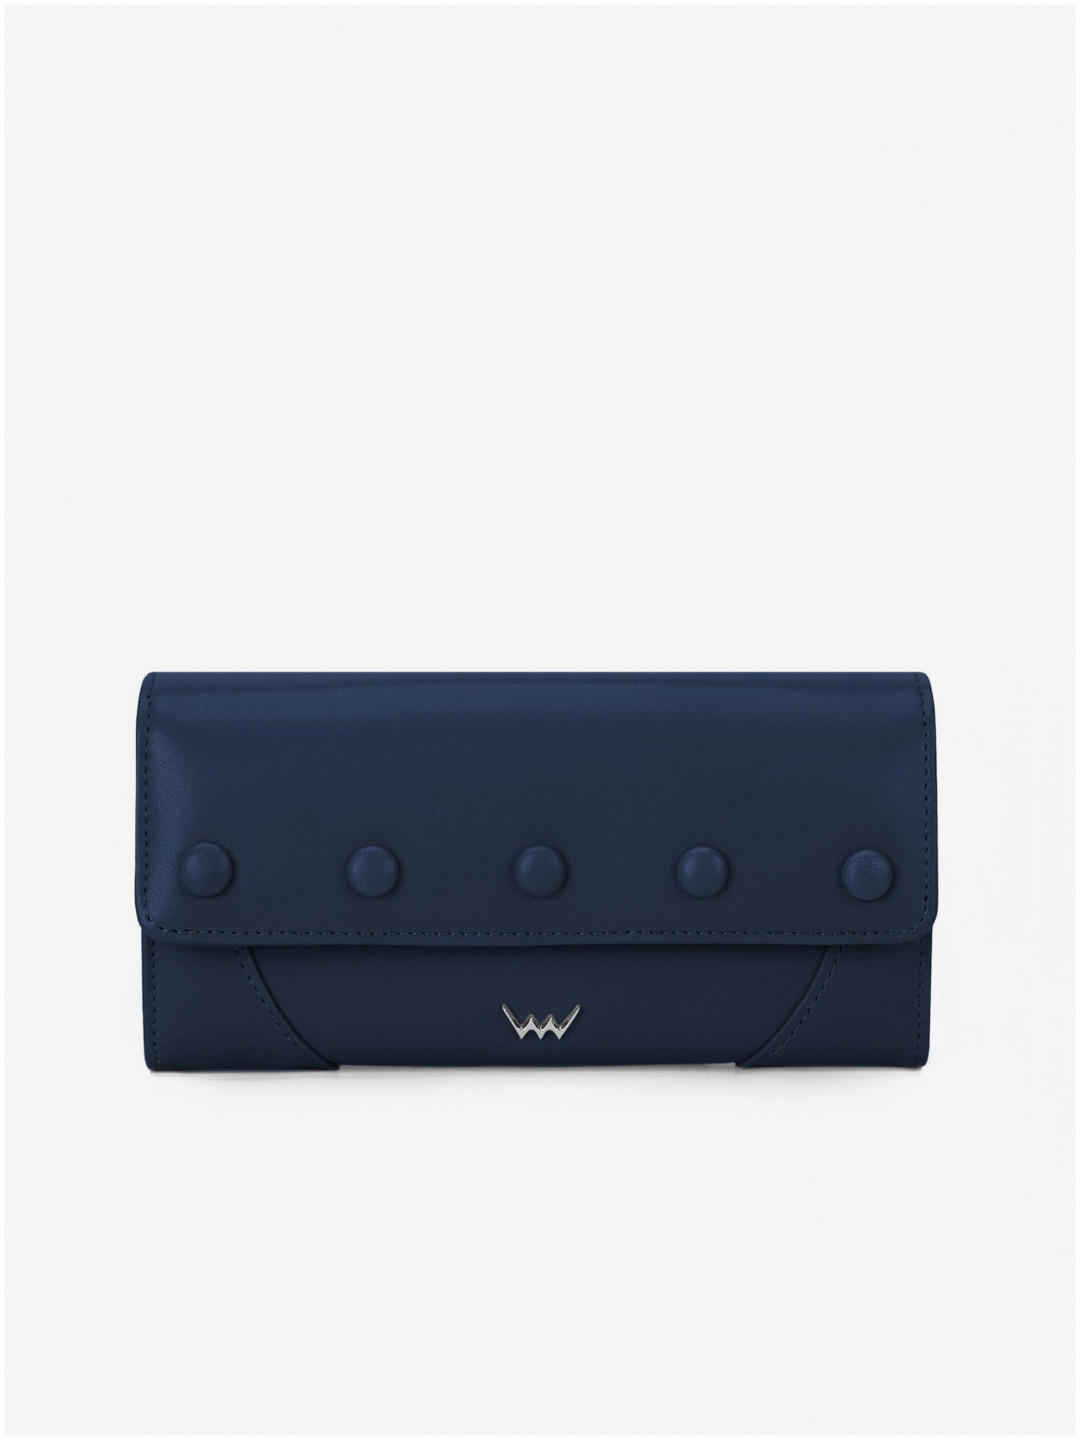 Tmavě modrá dámská kožená peněženka VUCH Tosca Blue